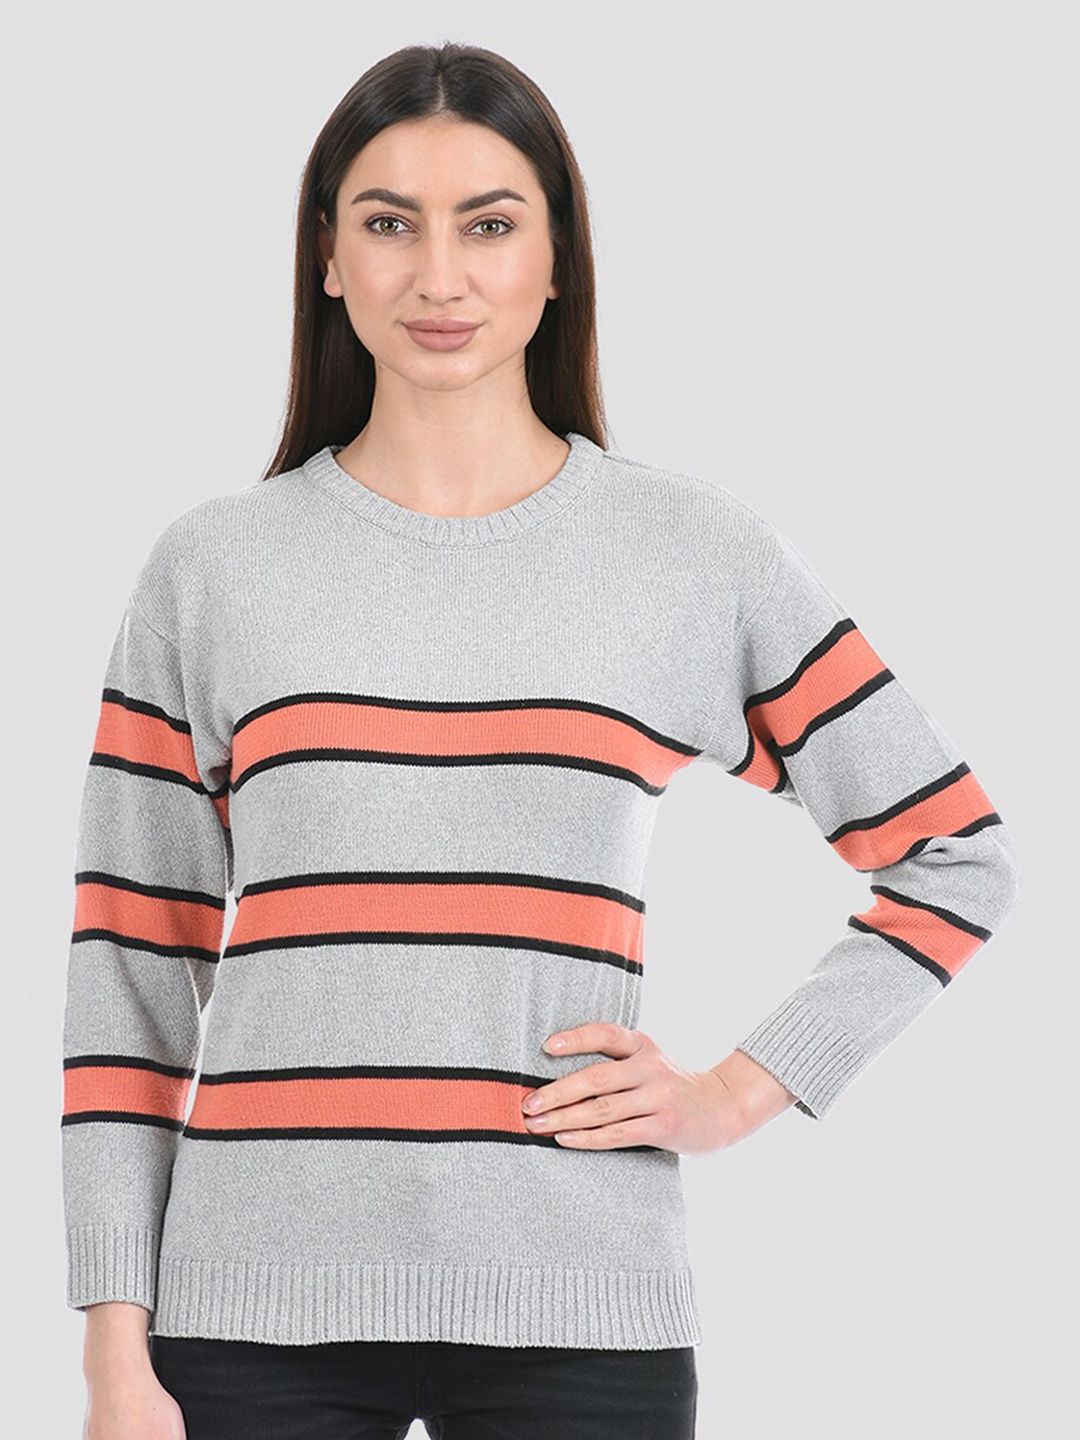 PORTOBELLO Women Grey & Orange Striped Pullover Price in India